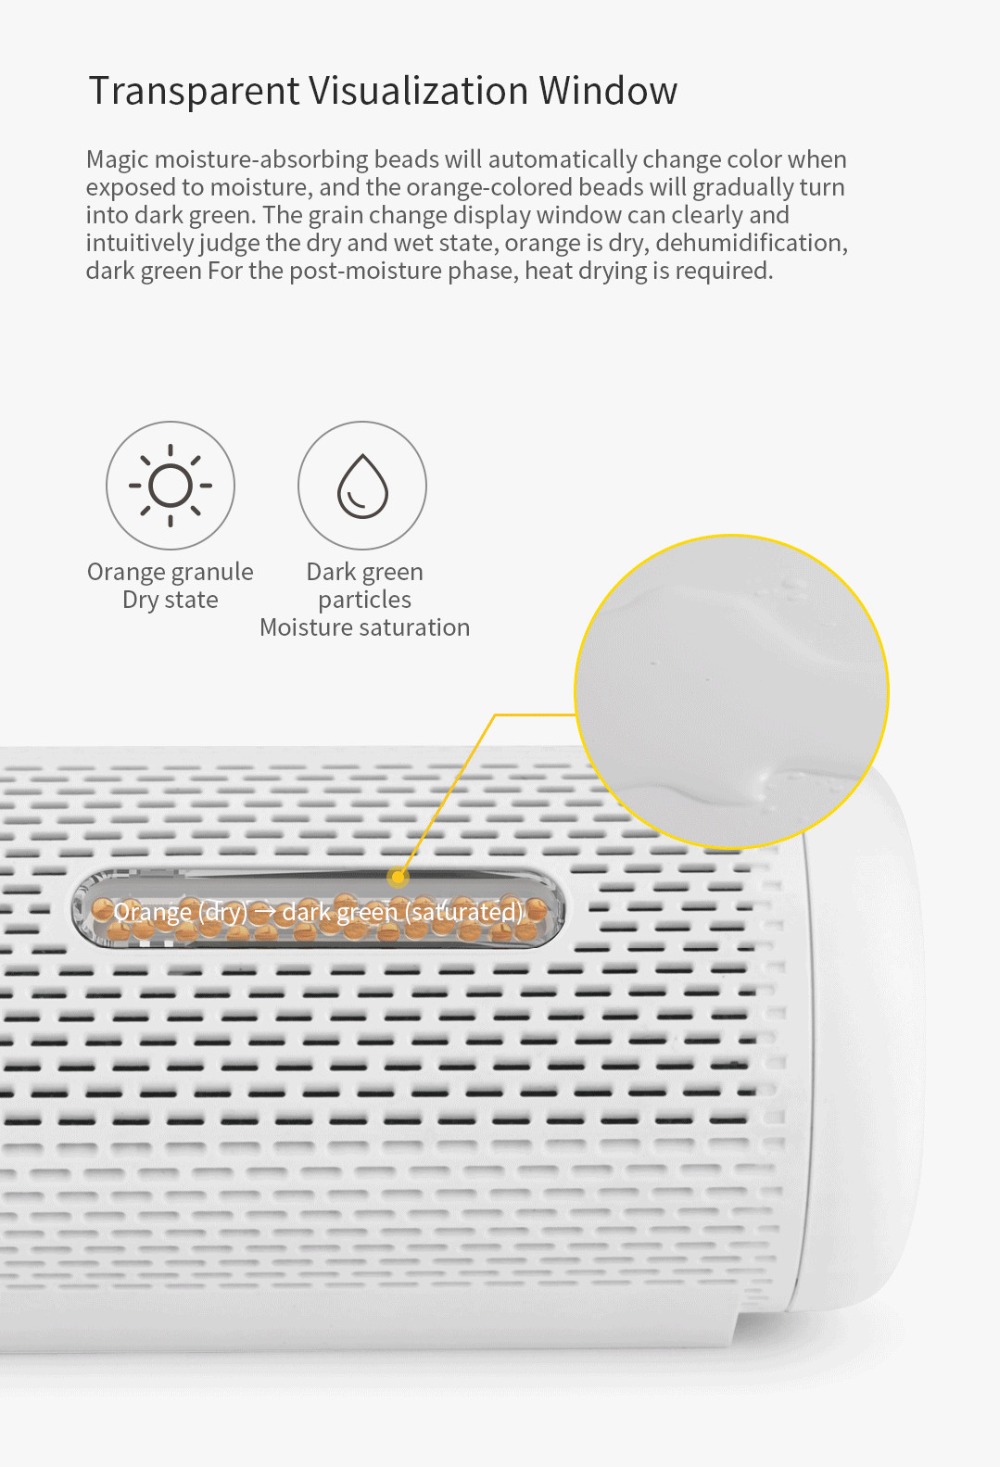 Deerma Mini Dehumidifier Cycle Air Moisture Dryer From Xiaomi Youpin